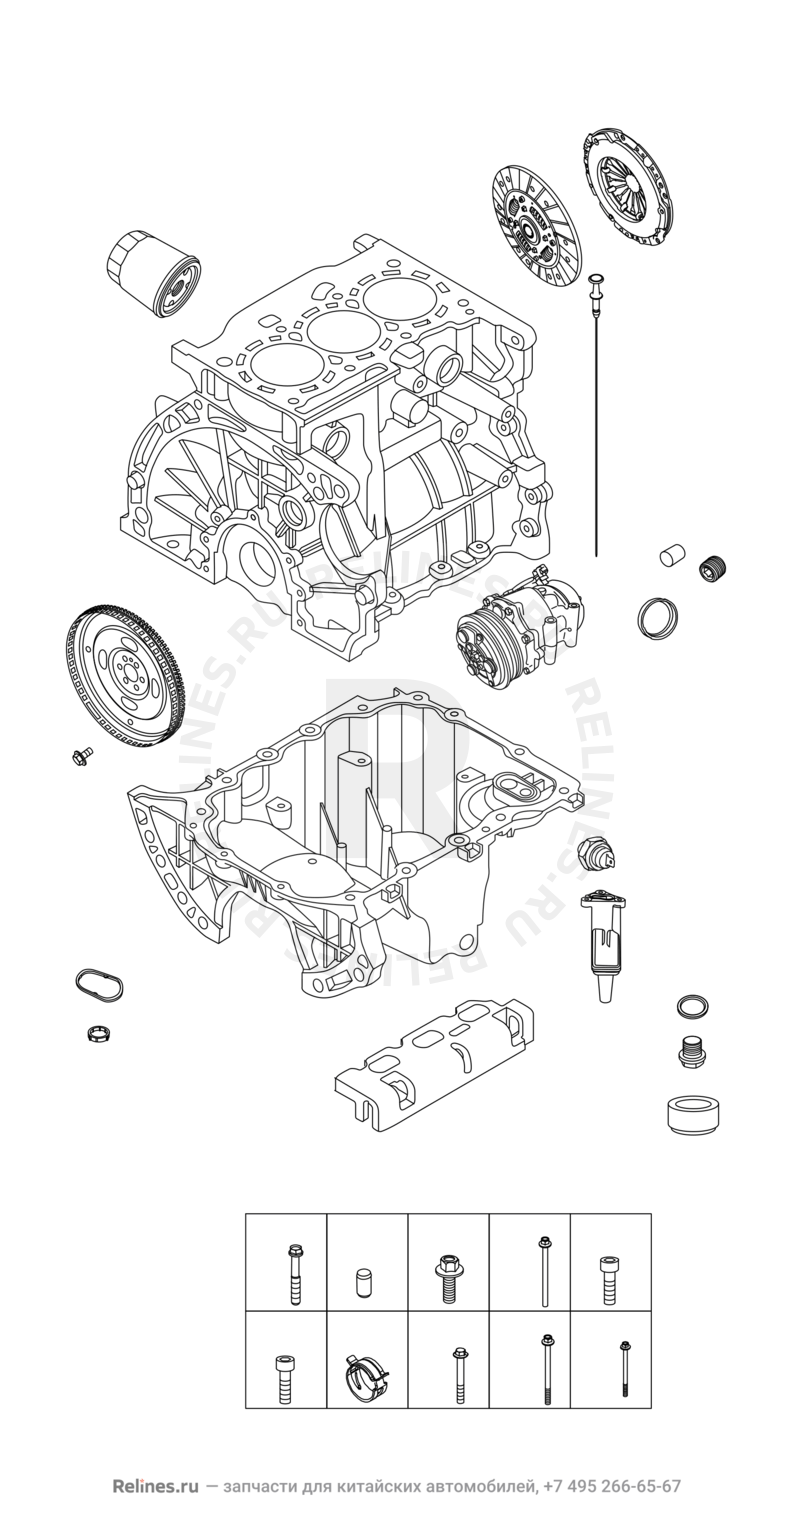 Запчасти Chery Tiggo 2 Pro Поколение I (2021)  — Блок цилиндров — схема